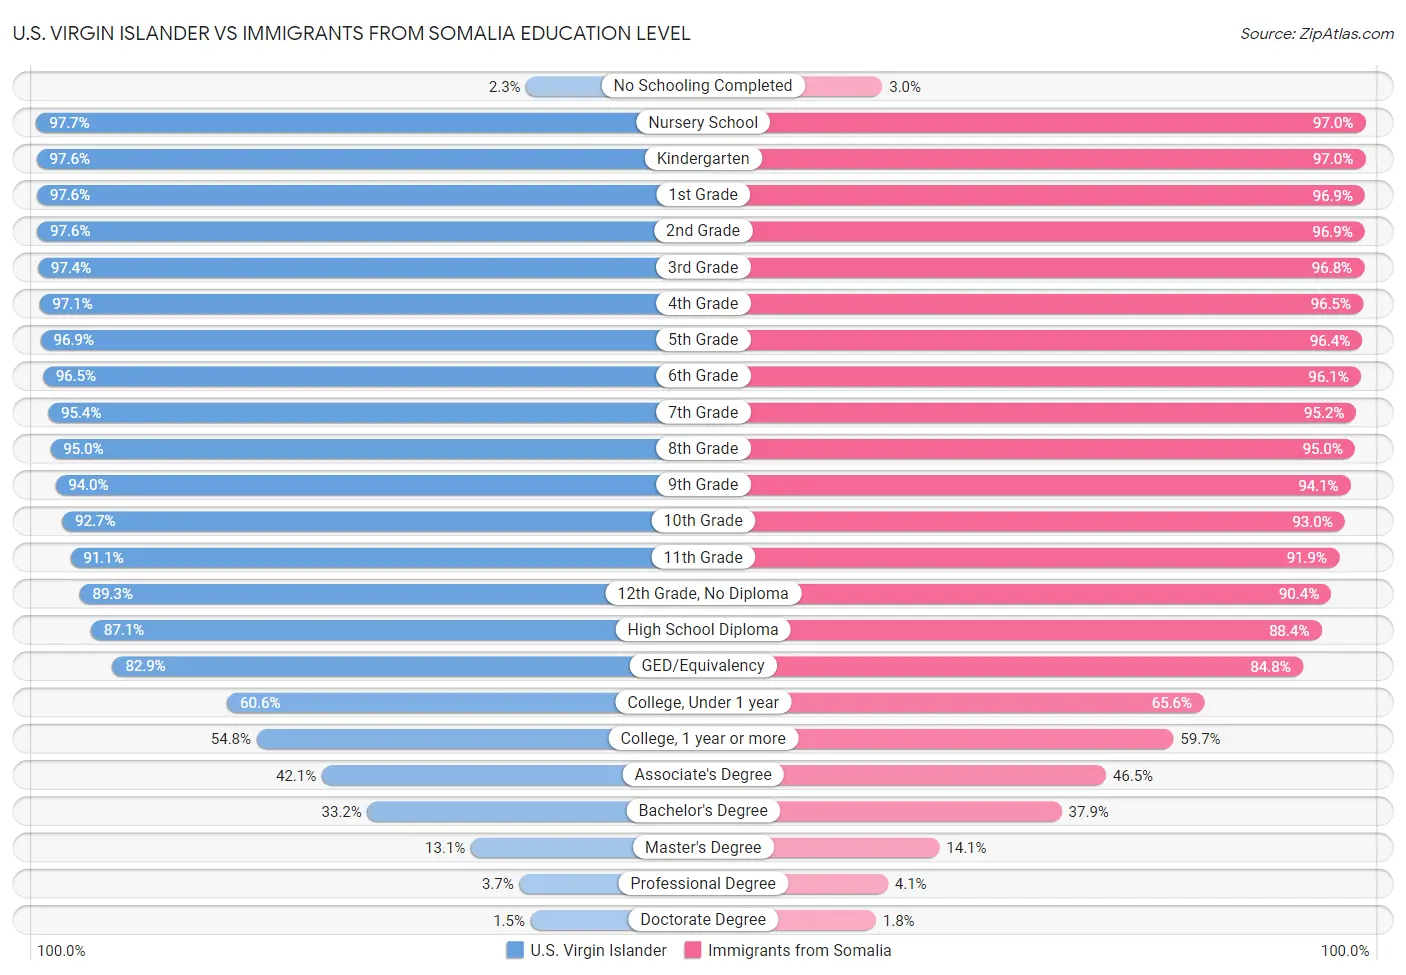 U.S. Virgin Islander vs Immigrants from Somalia Education Level